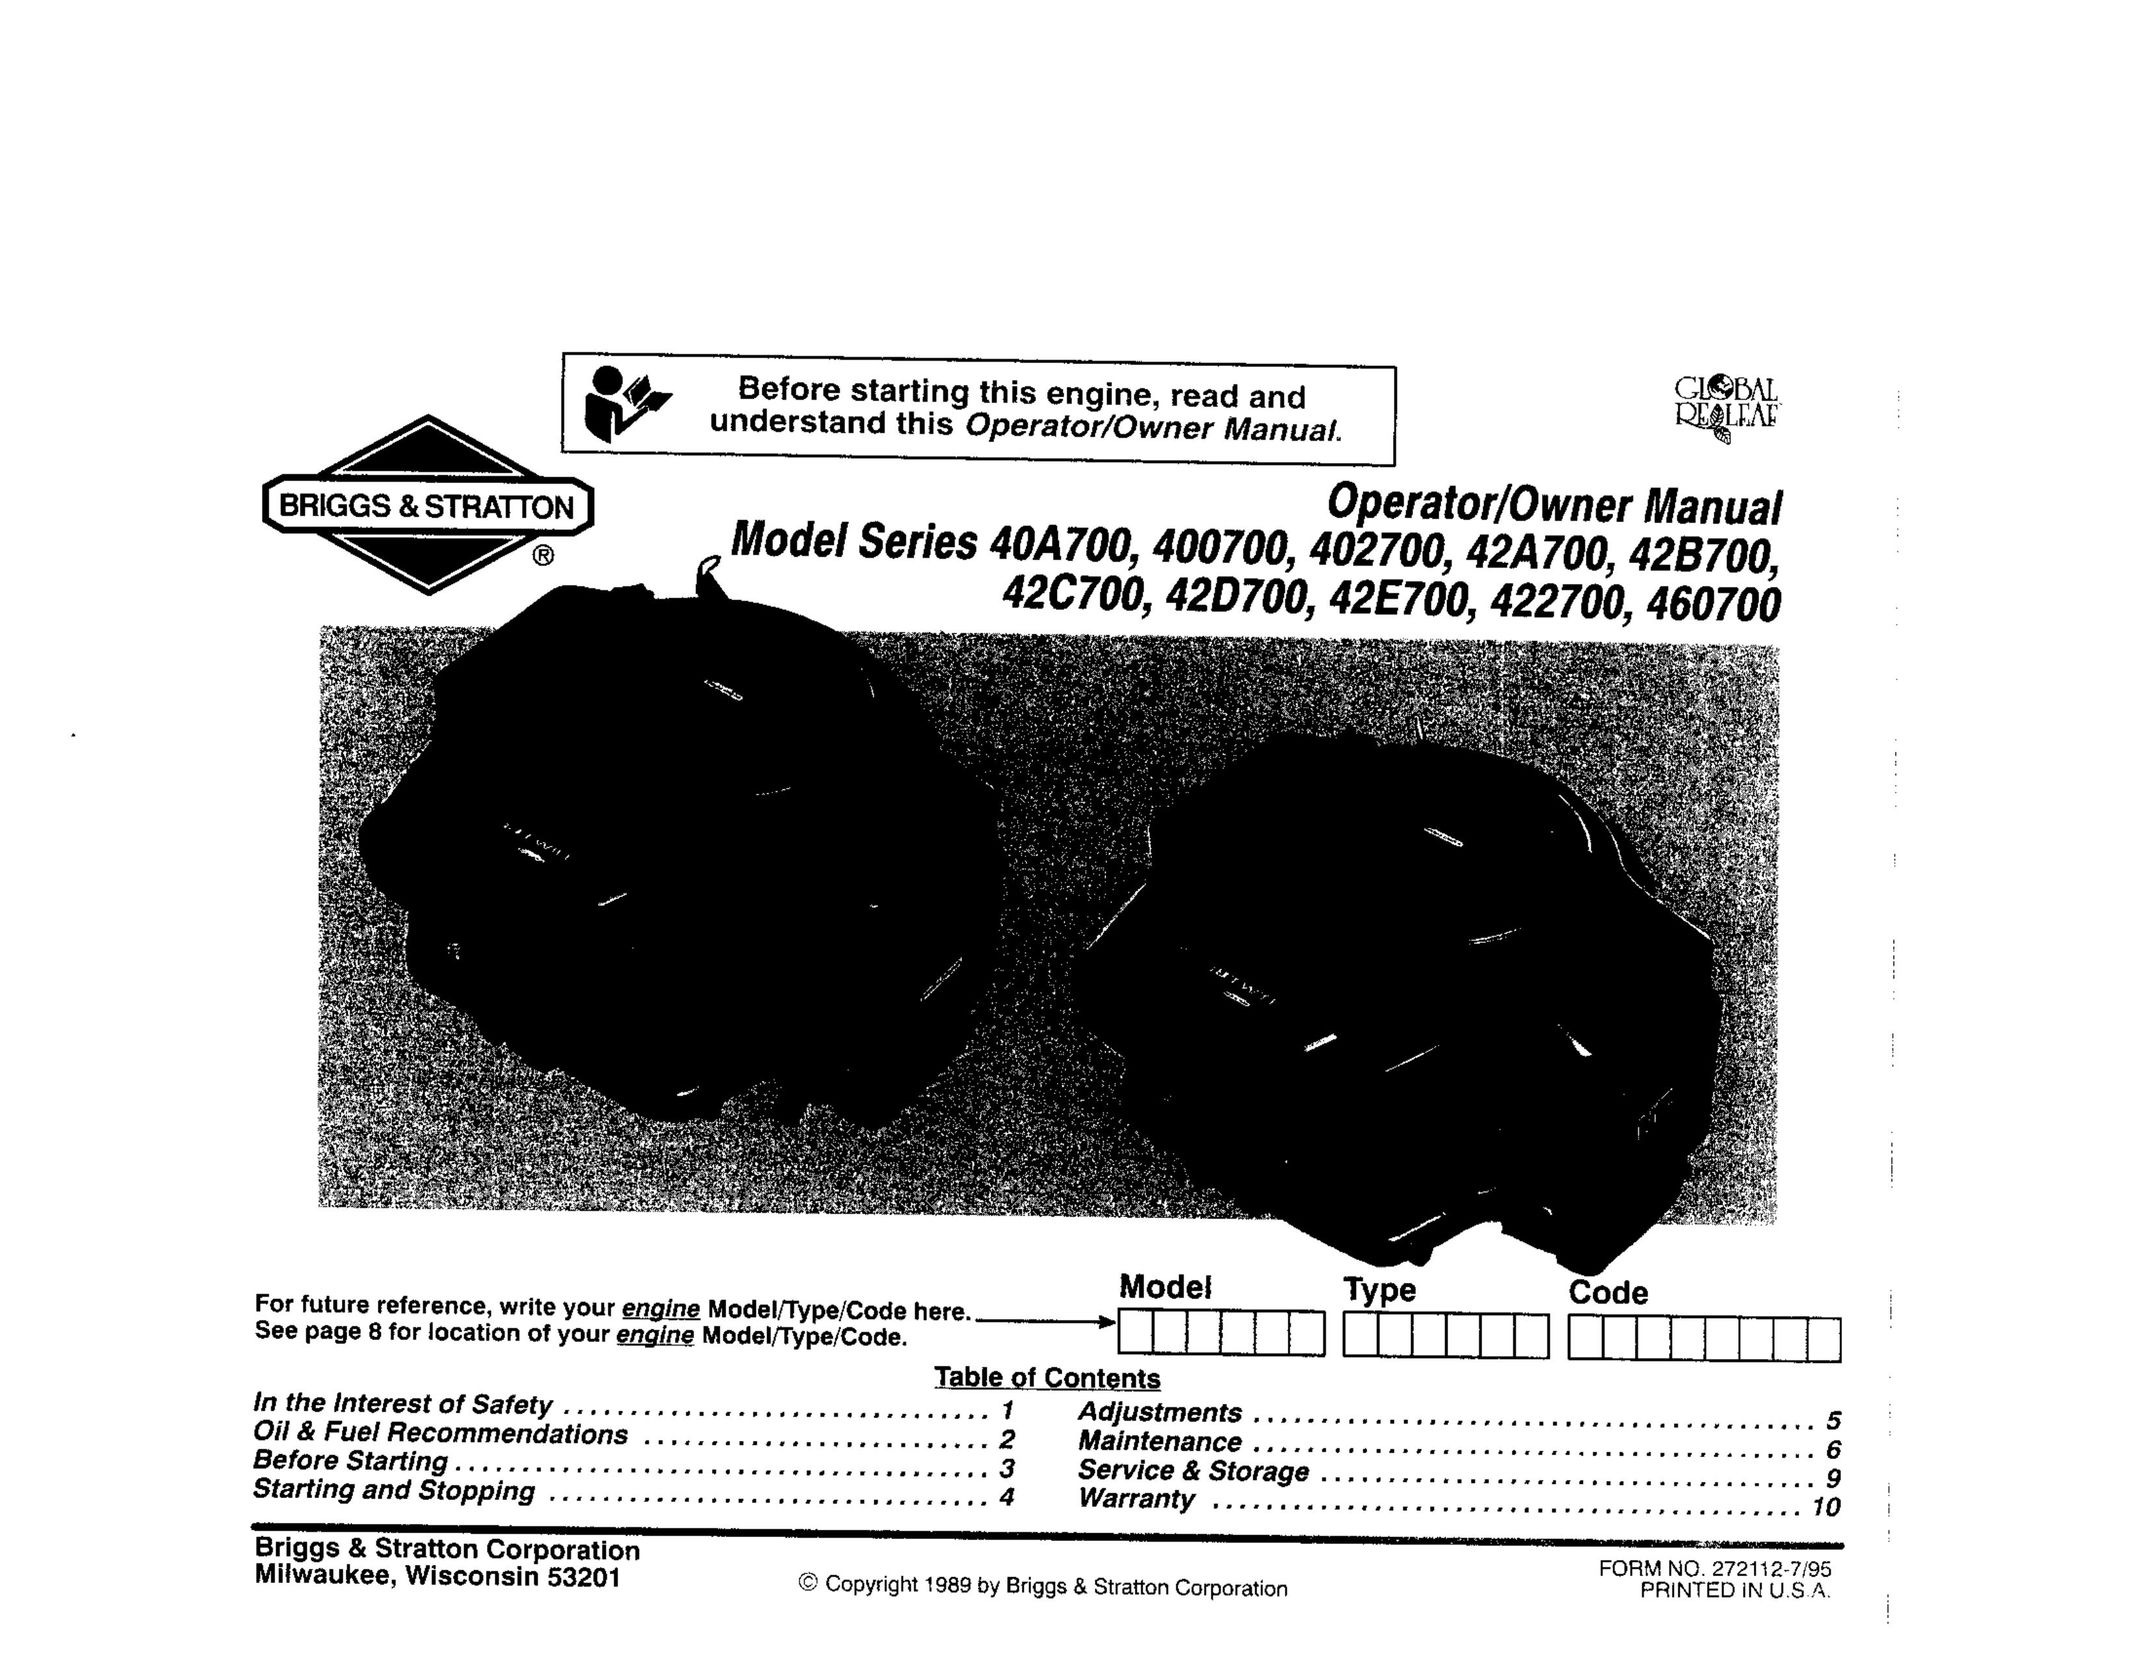 Briggs & Stratton 402700 Welder User Manual